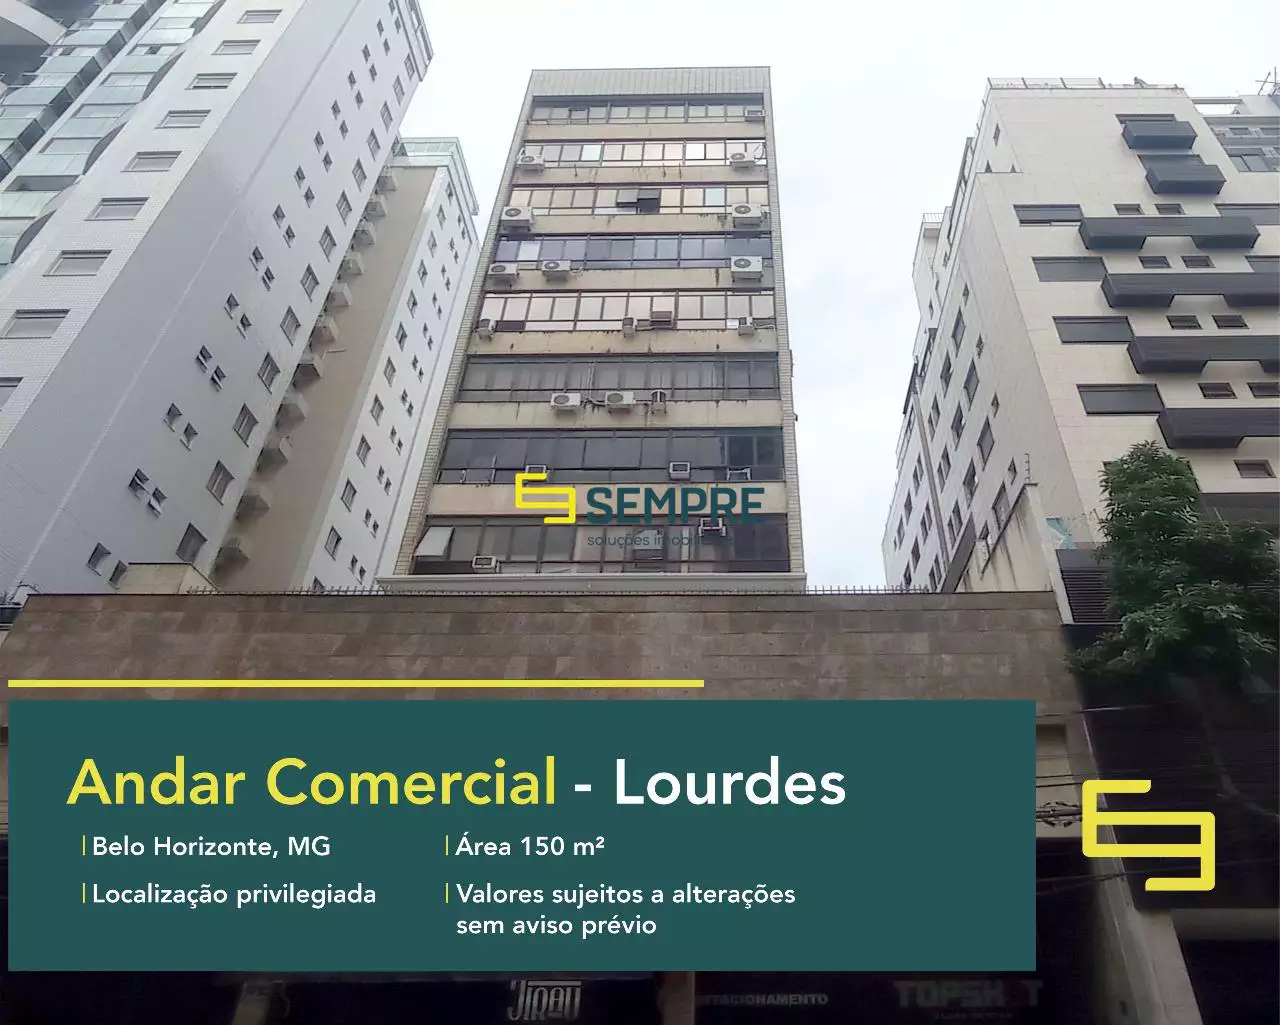 Aluguel de andar corrido no Lourdes - Belo Horizonte, em excelente localização. O ponto comercial conta com área de 150 m².